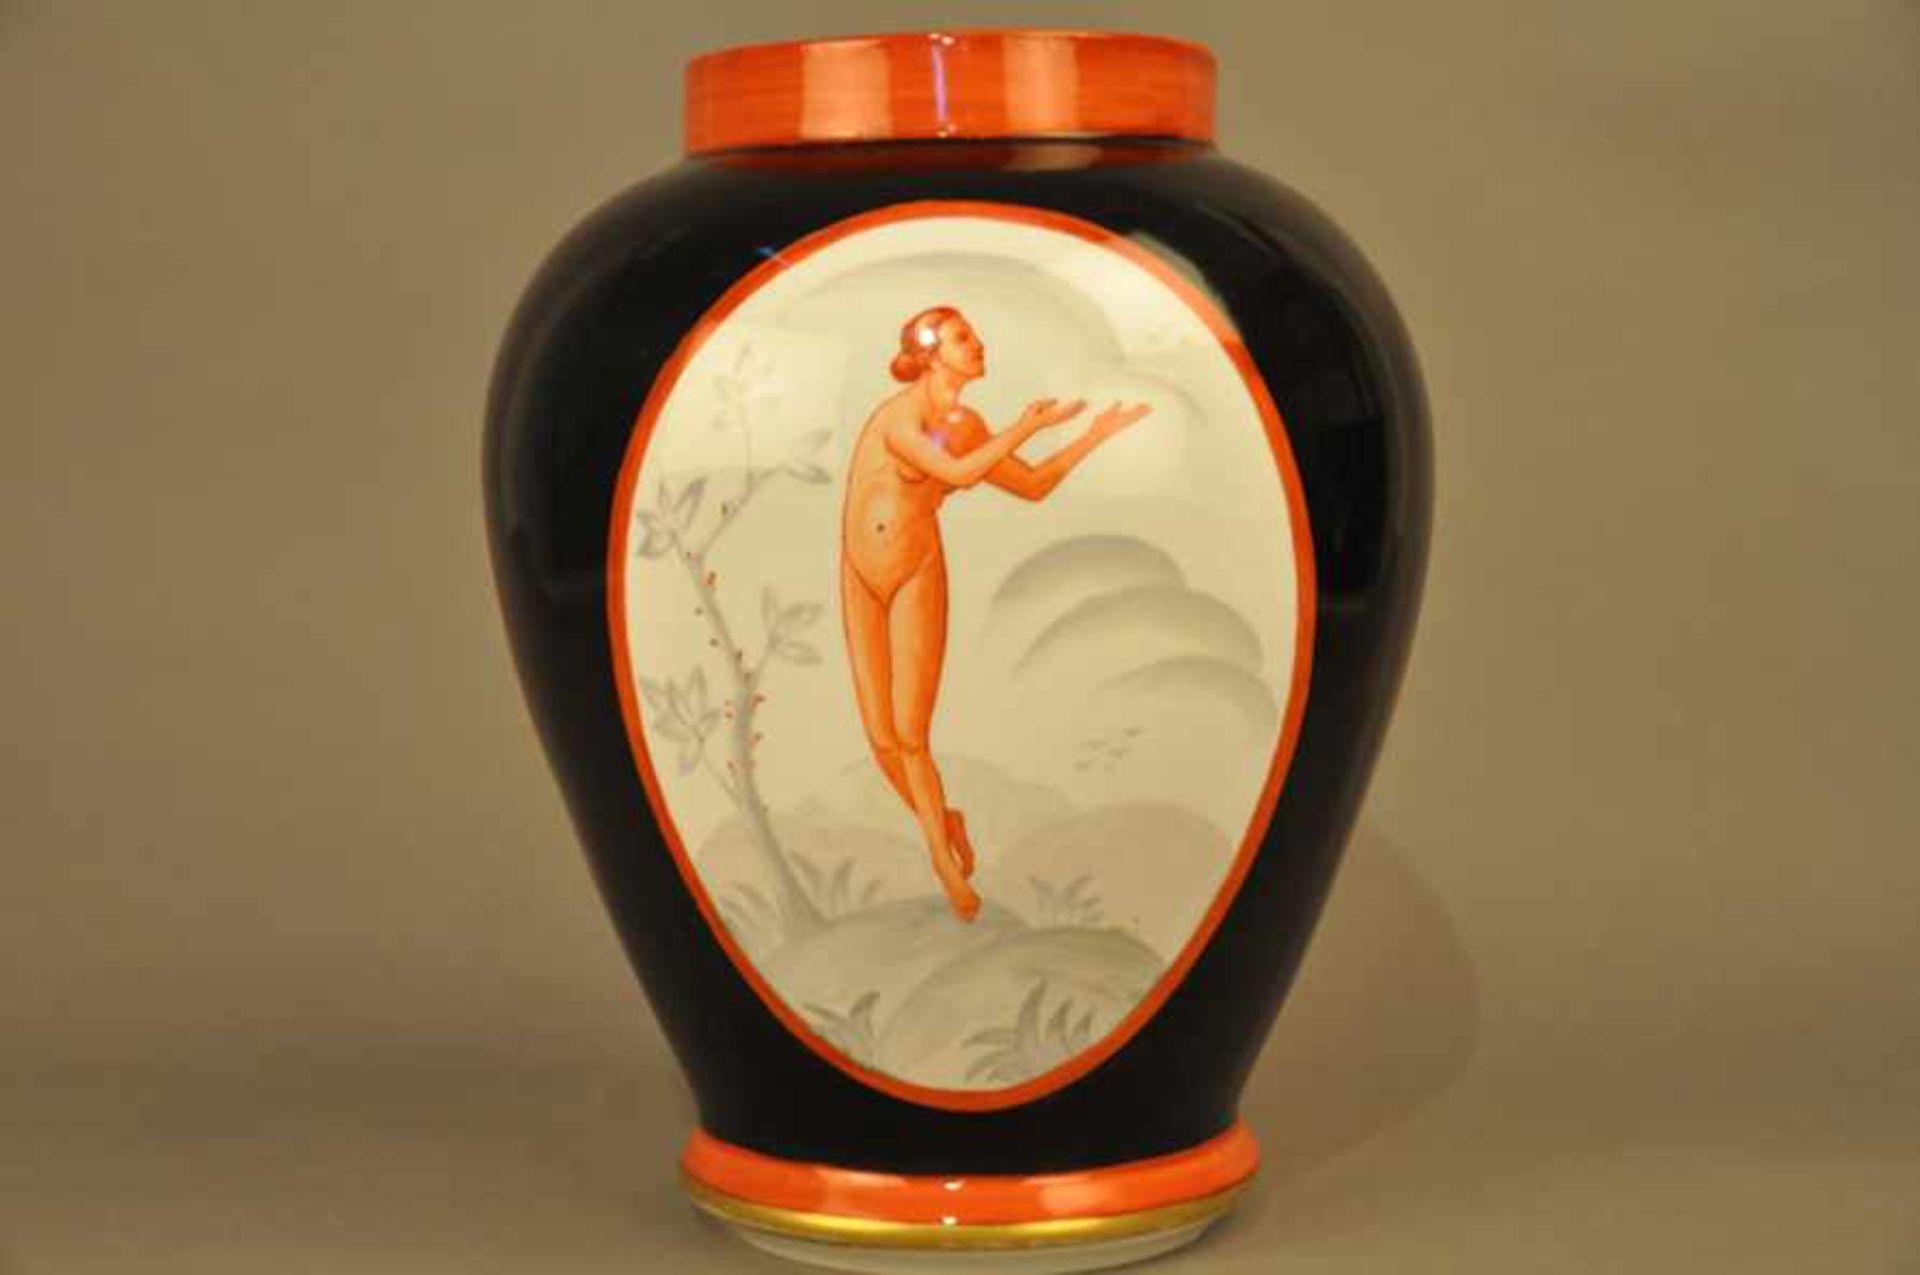 Bauchige Vase, Jugendstil / Art Deco.Schwarzer Fond, 2 Kartuschen mit weiblichen Akten in Rot, - Image 5 of 7